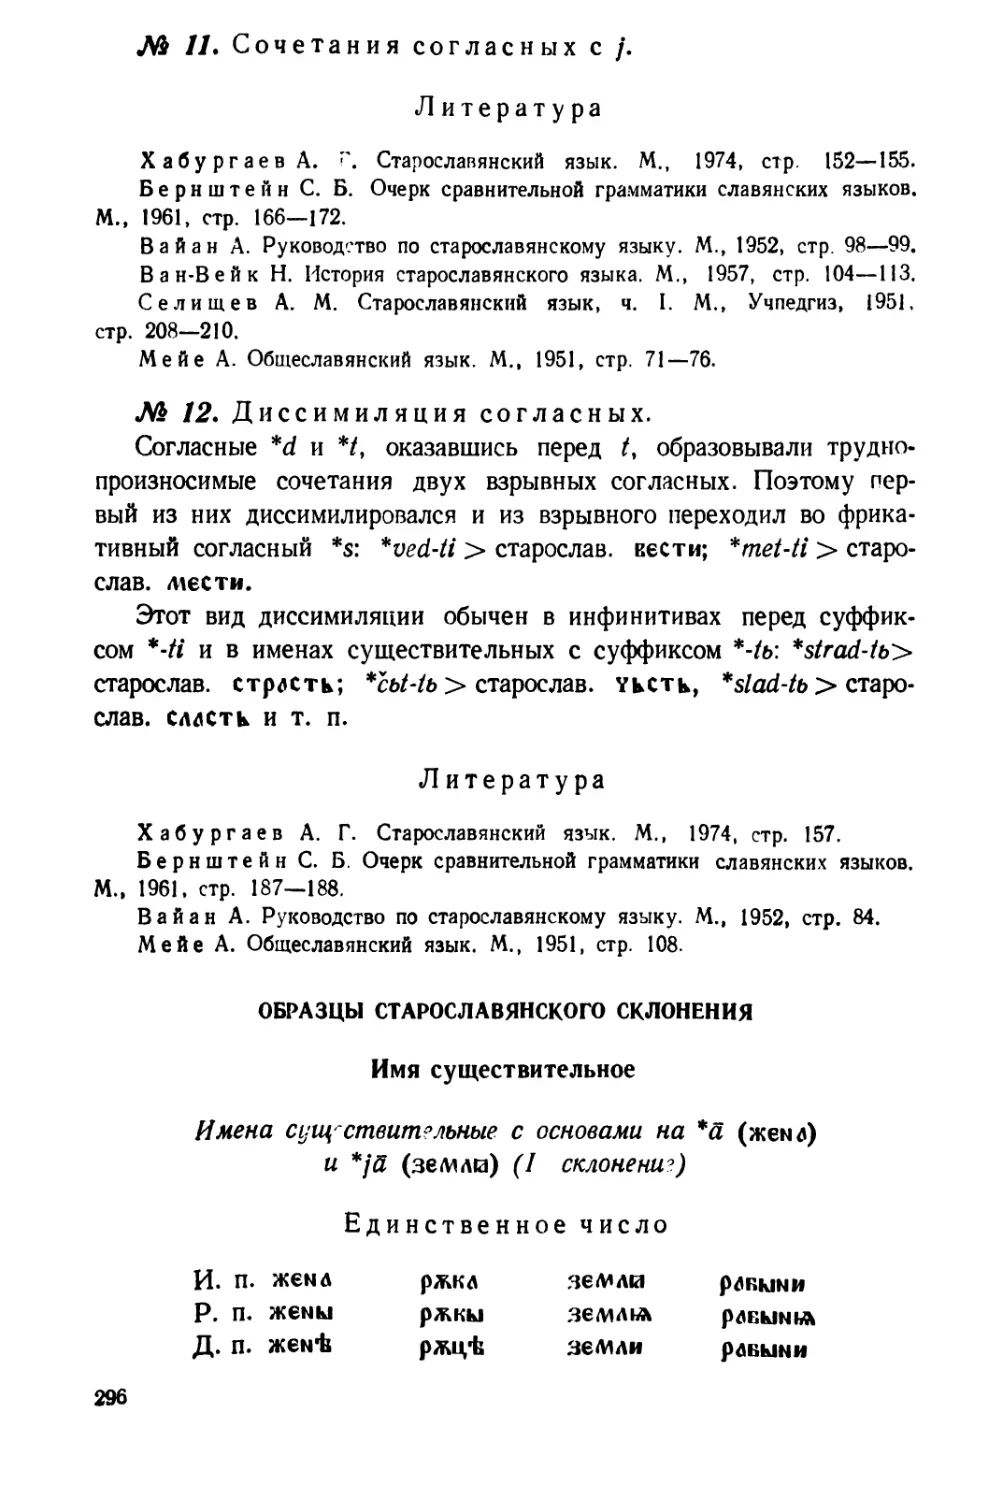 Образцы старославянского склонения